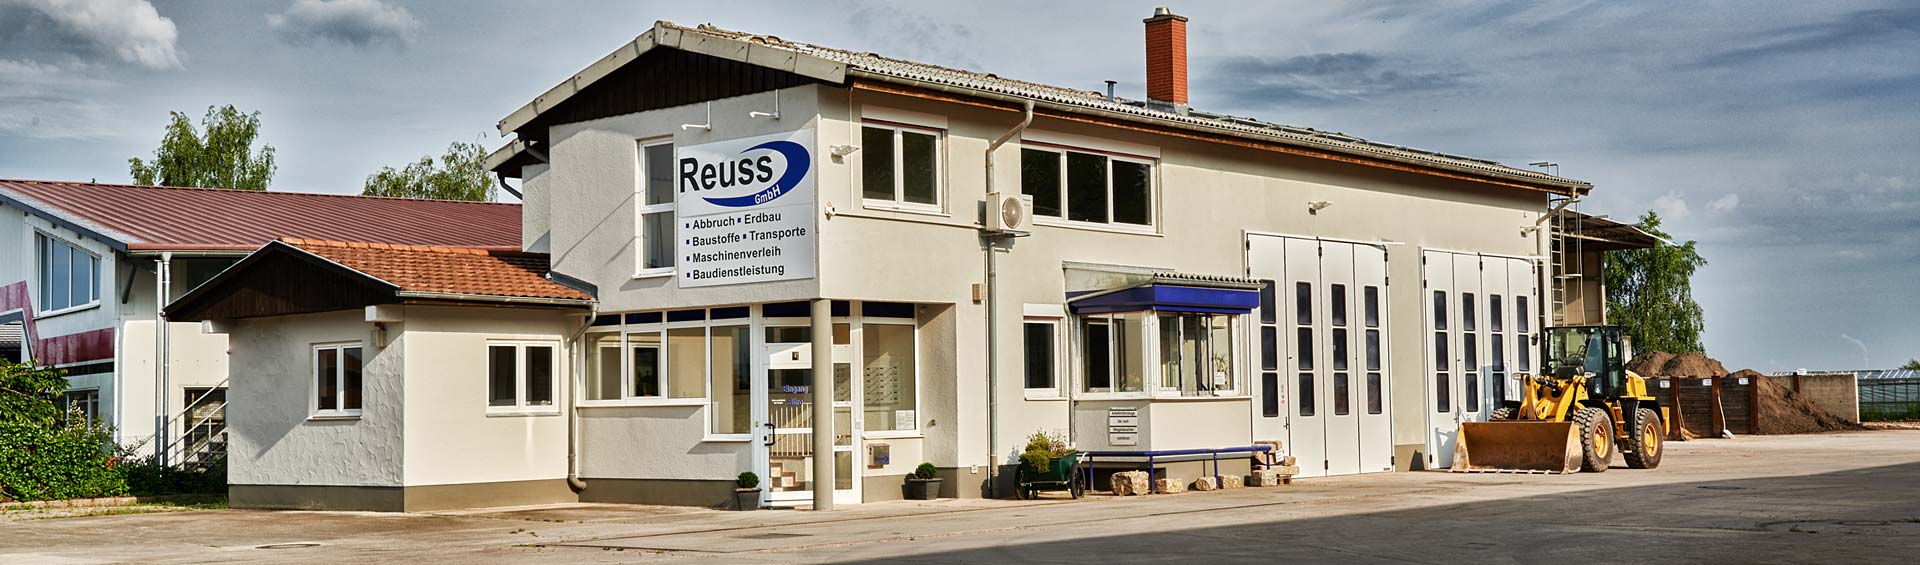 Reuss GmbH - 5 Meilensteine - Philosophie